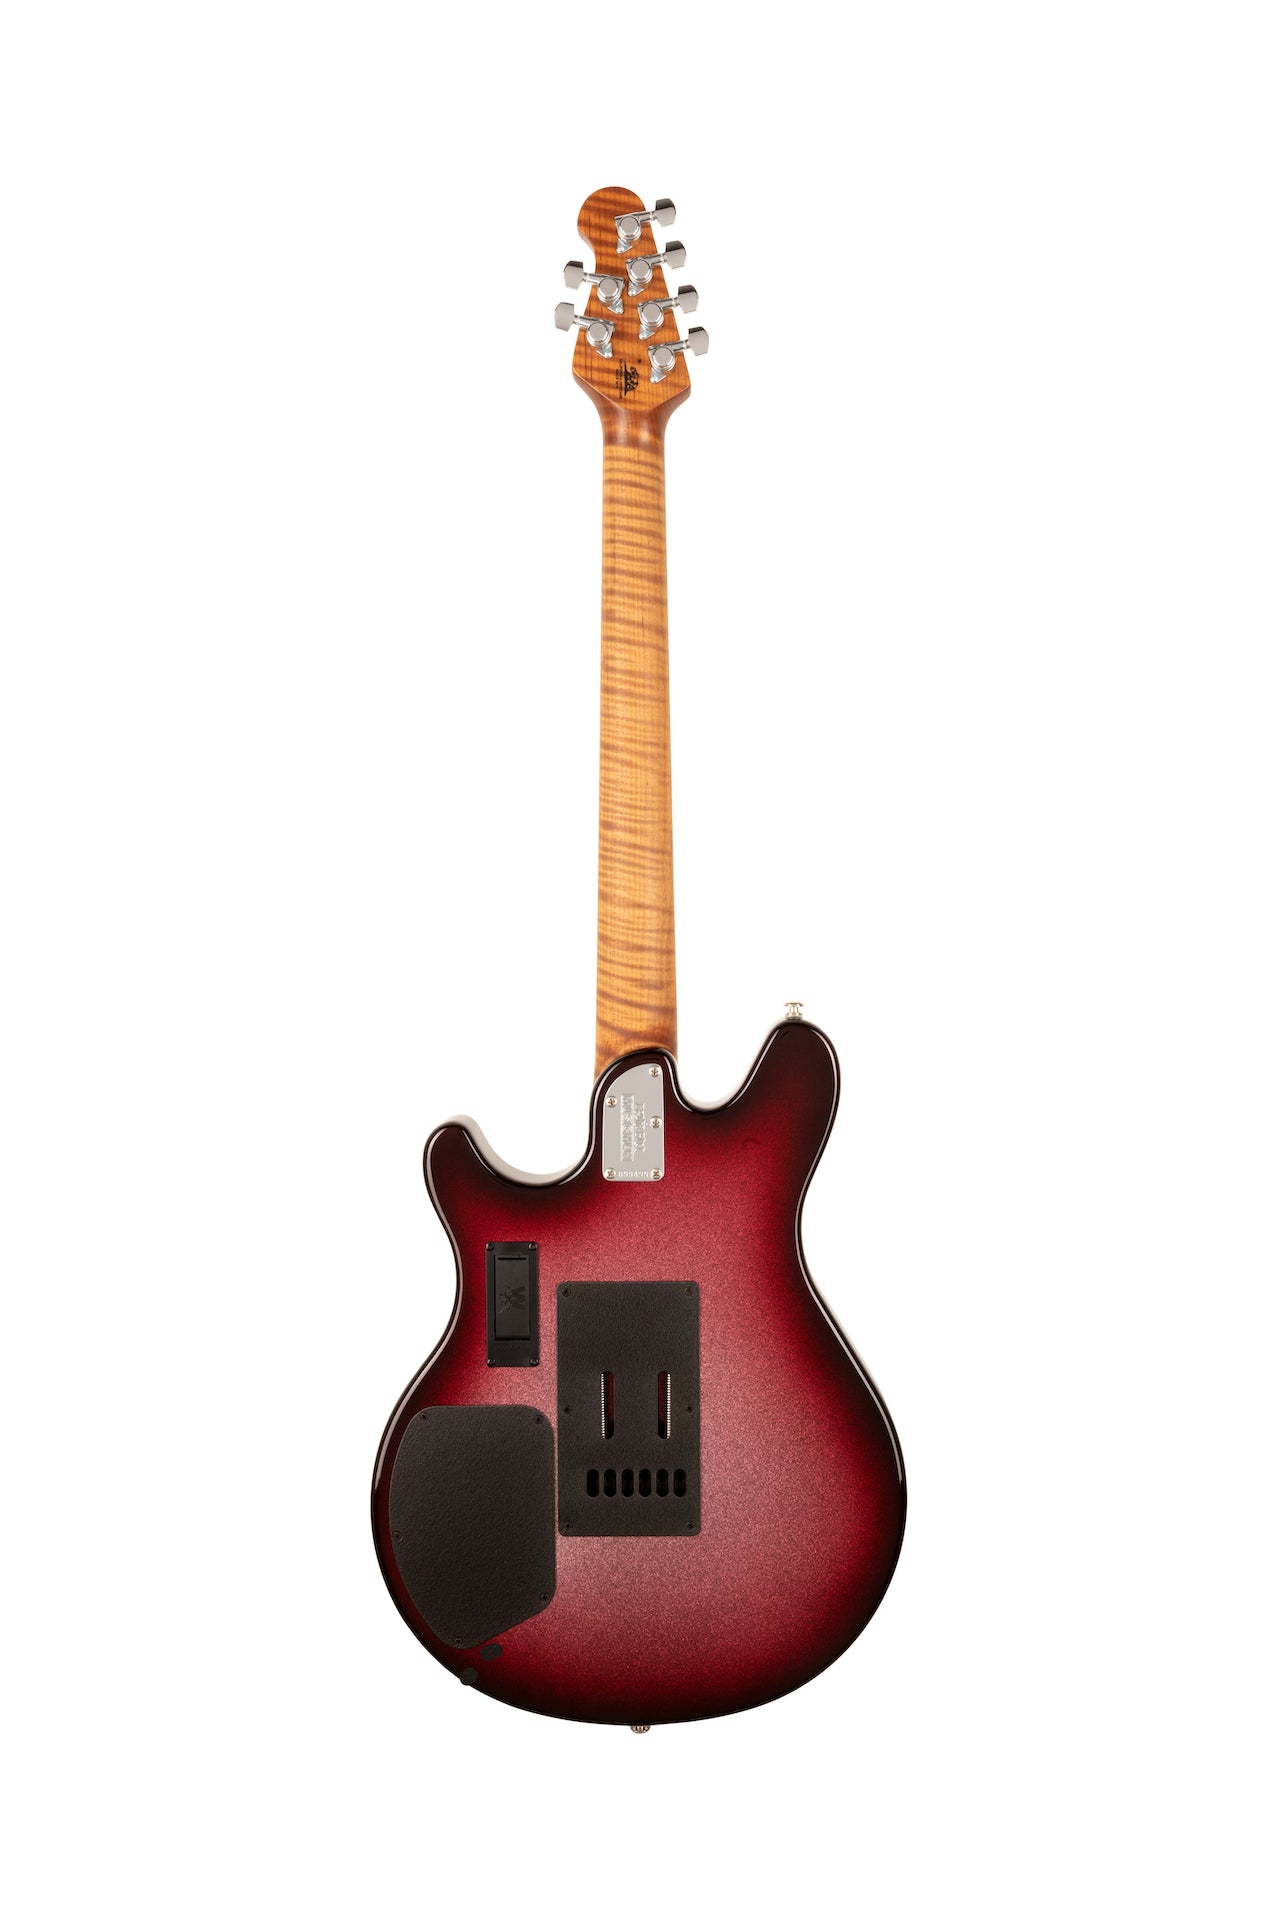 Ernie Ball Music Man Valentine Tremolo Electric Guitar - Maroon Sparkle Burst H00556 - HIENDGUITAR   Musicman GUITAR